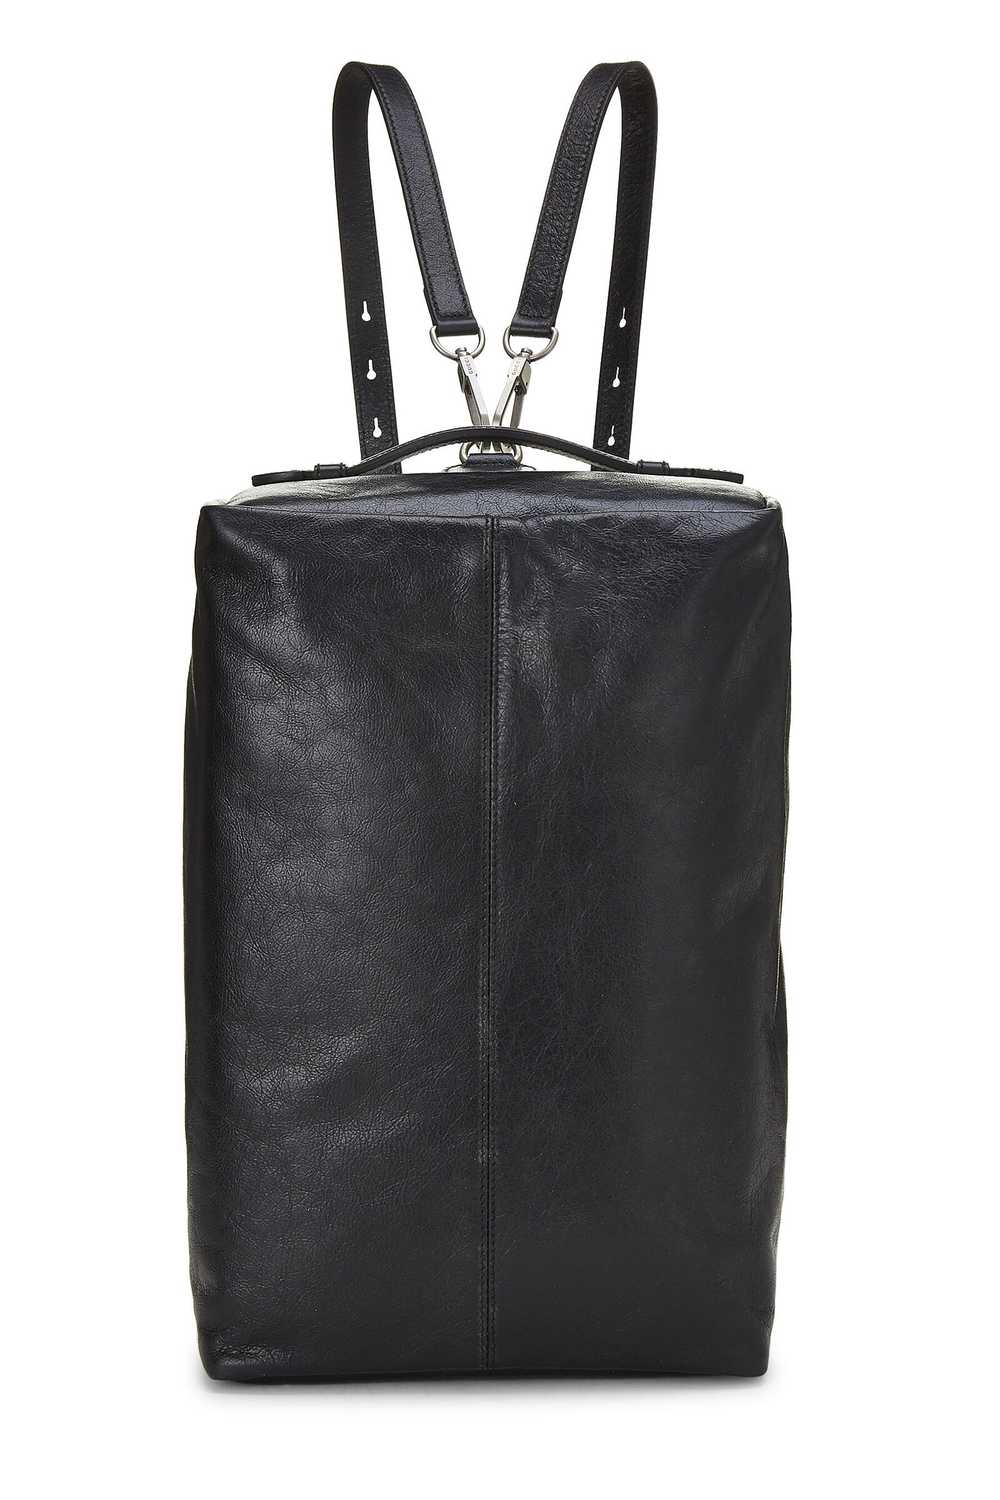 Black Leather Soft Backpack - image 1